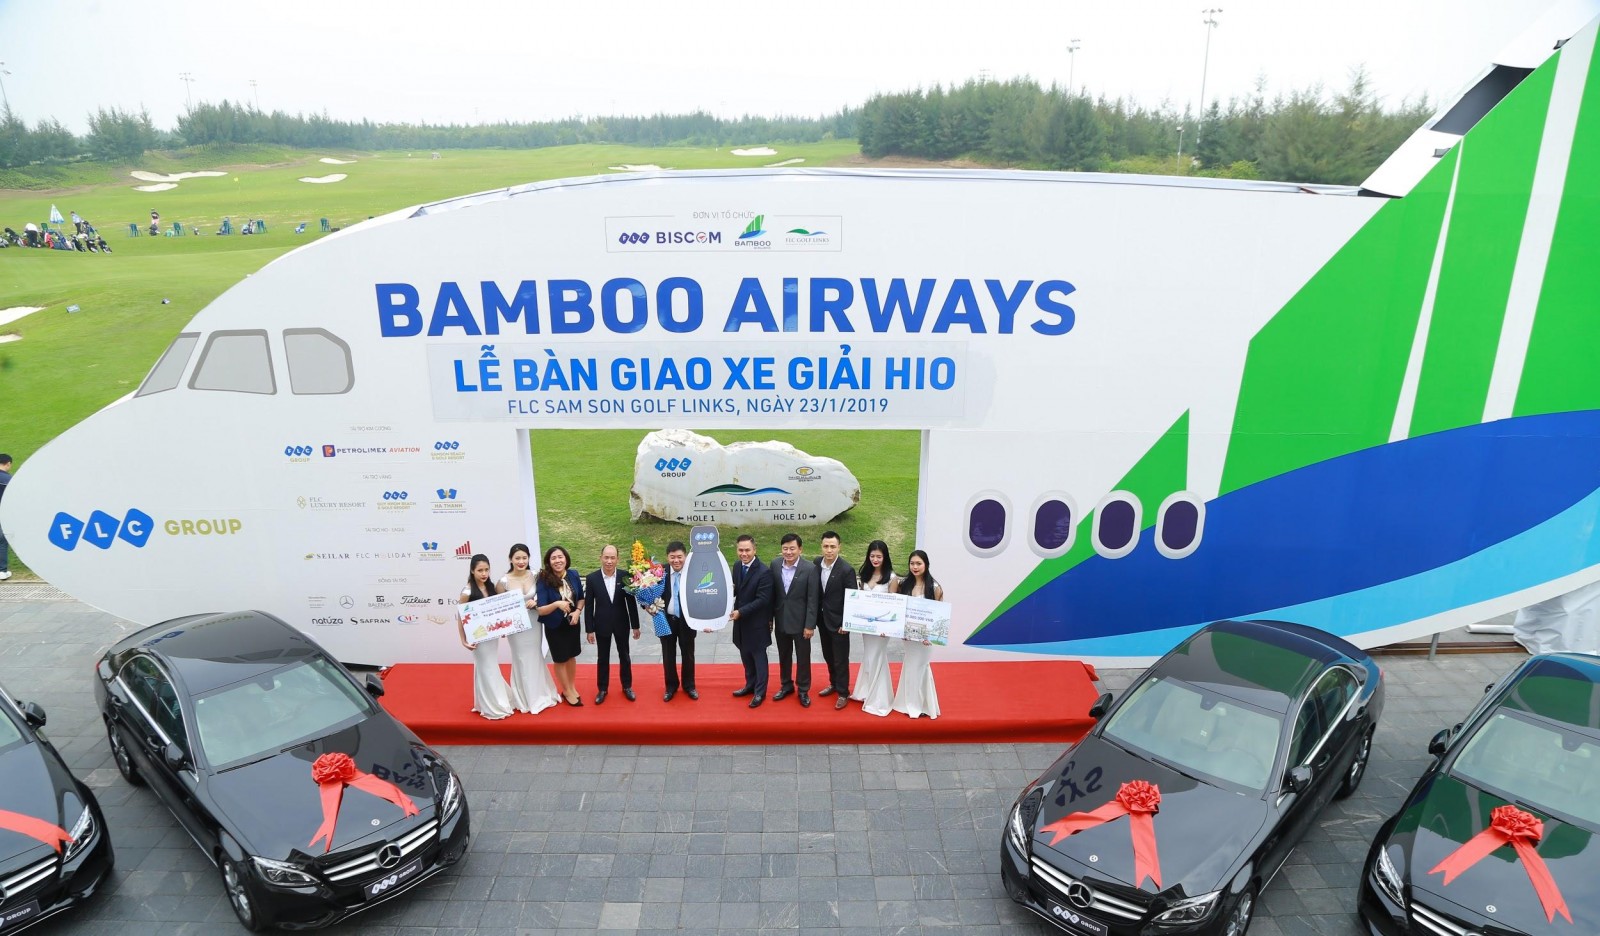 Golfer Cao Xuân Hùng vinh dự nhận 4 xe Mercedes từ ban tổ chức giải Bamboo Airways Takeoff Golf Tournament 2018